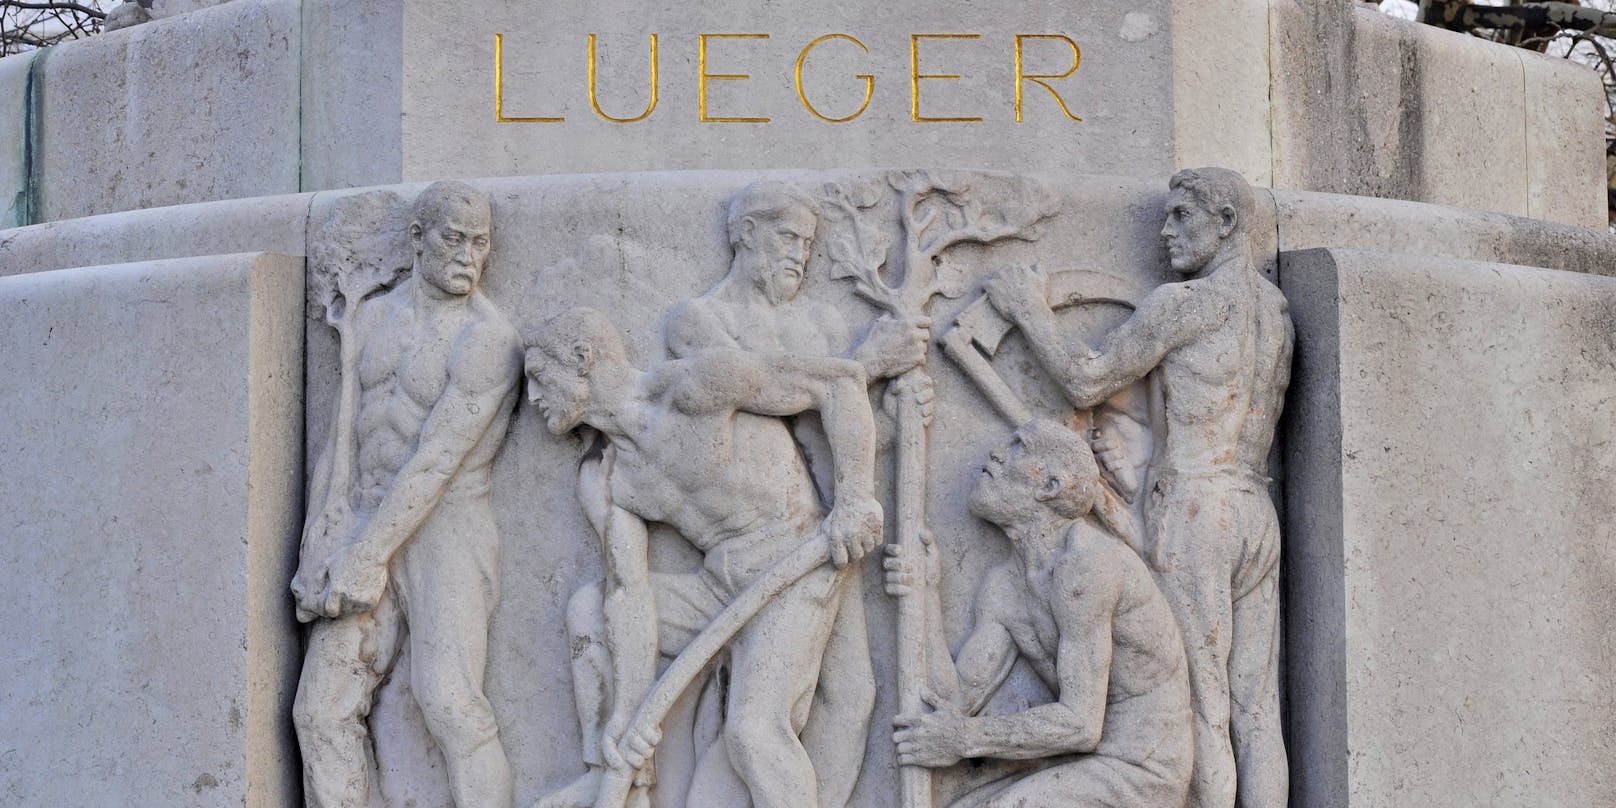 Das Lueger-Denkmal im ersten Bezirk ist heftig umstritten.